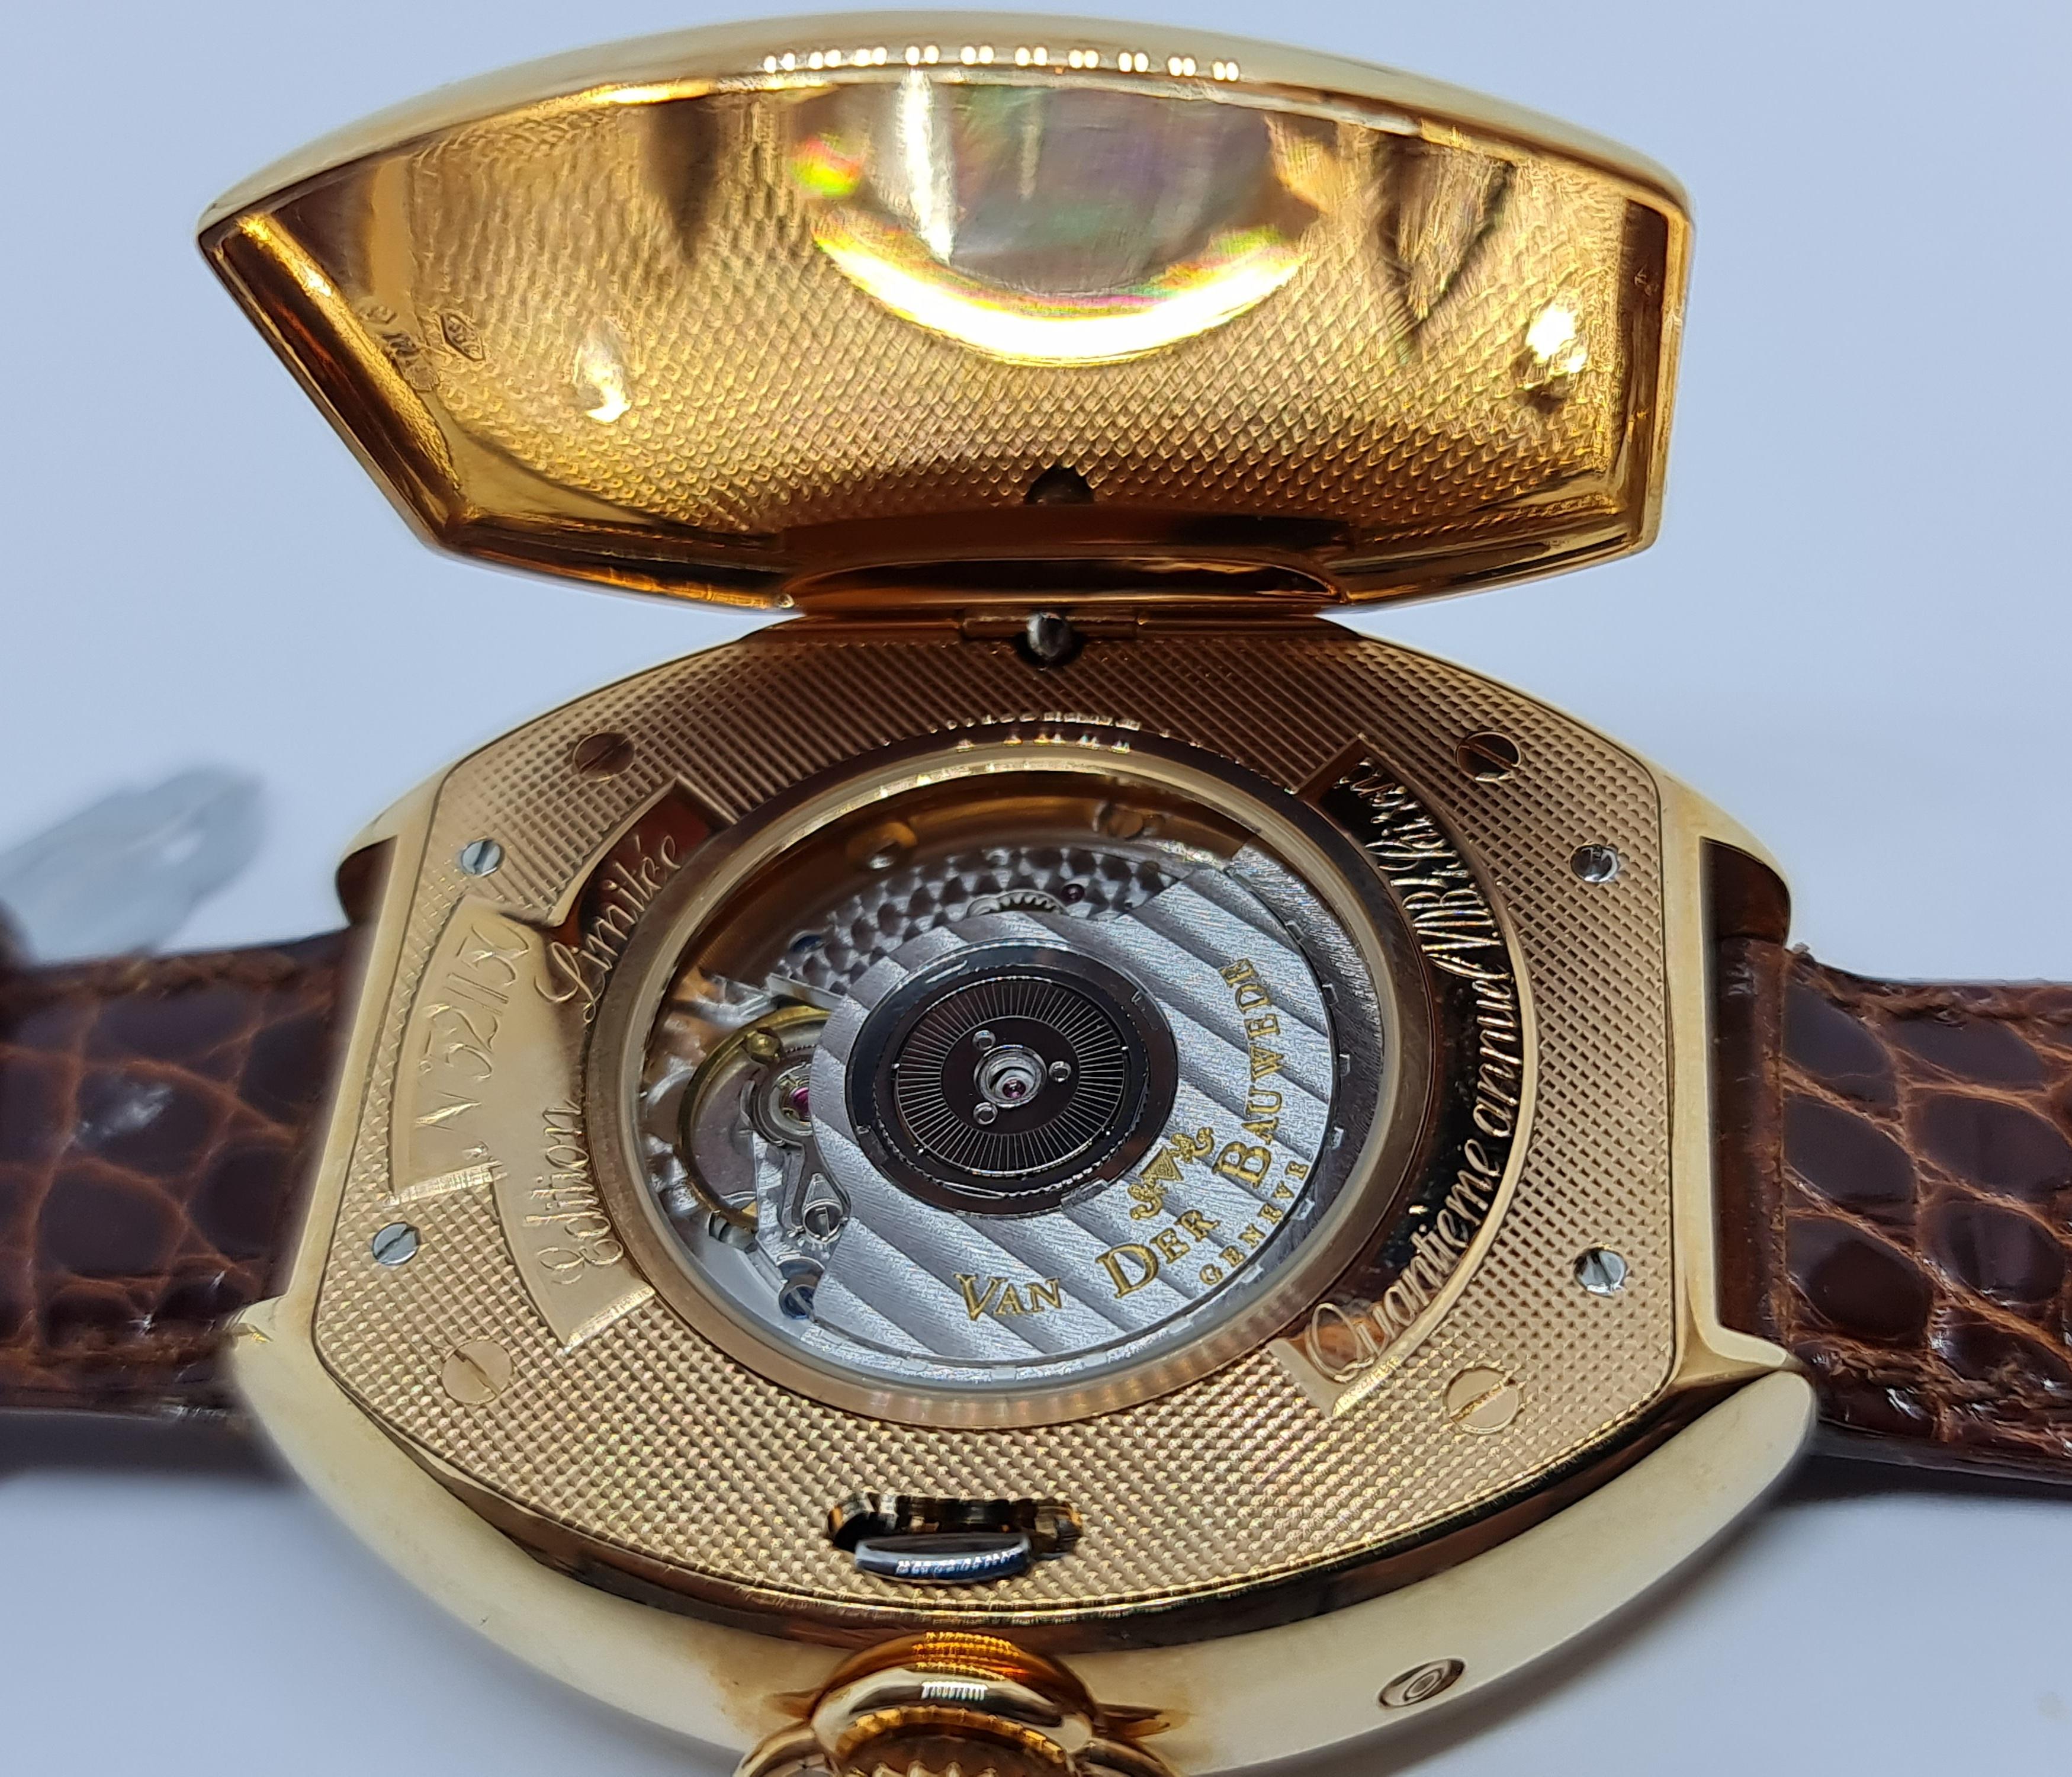 Pink Gold Van Der Bauwede Quantième annuel 4saisons Wrist Watch- Limited Edition For Sale 6